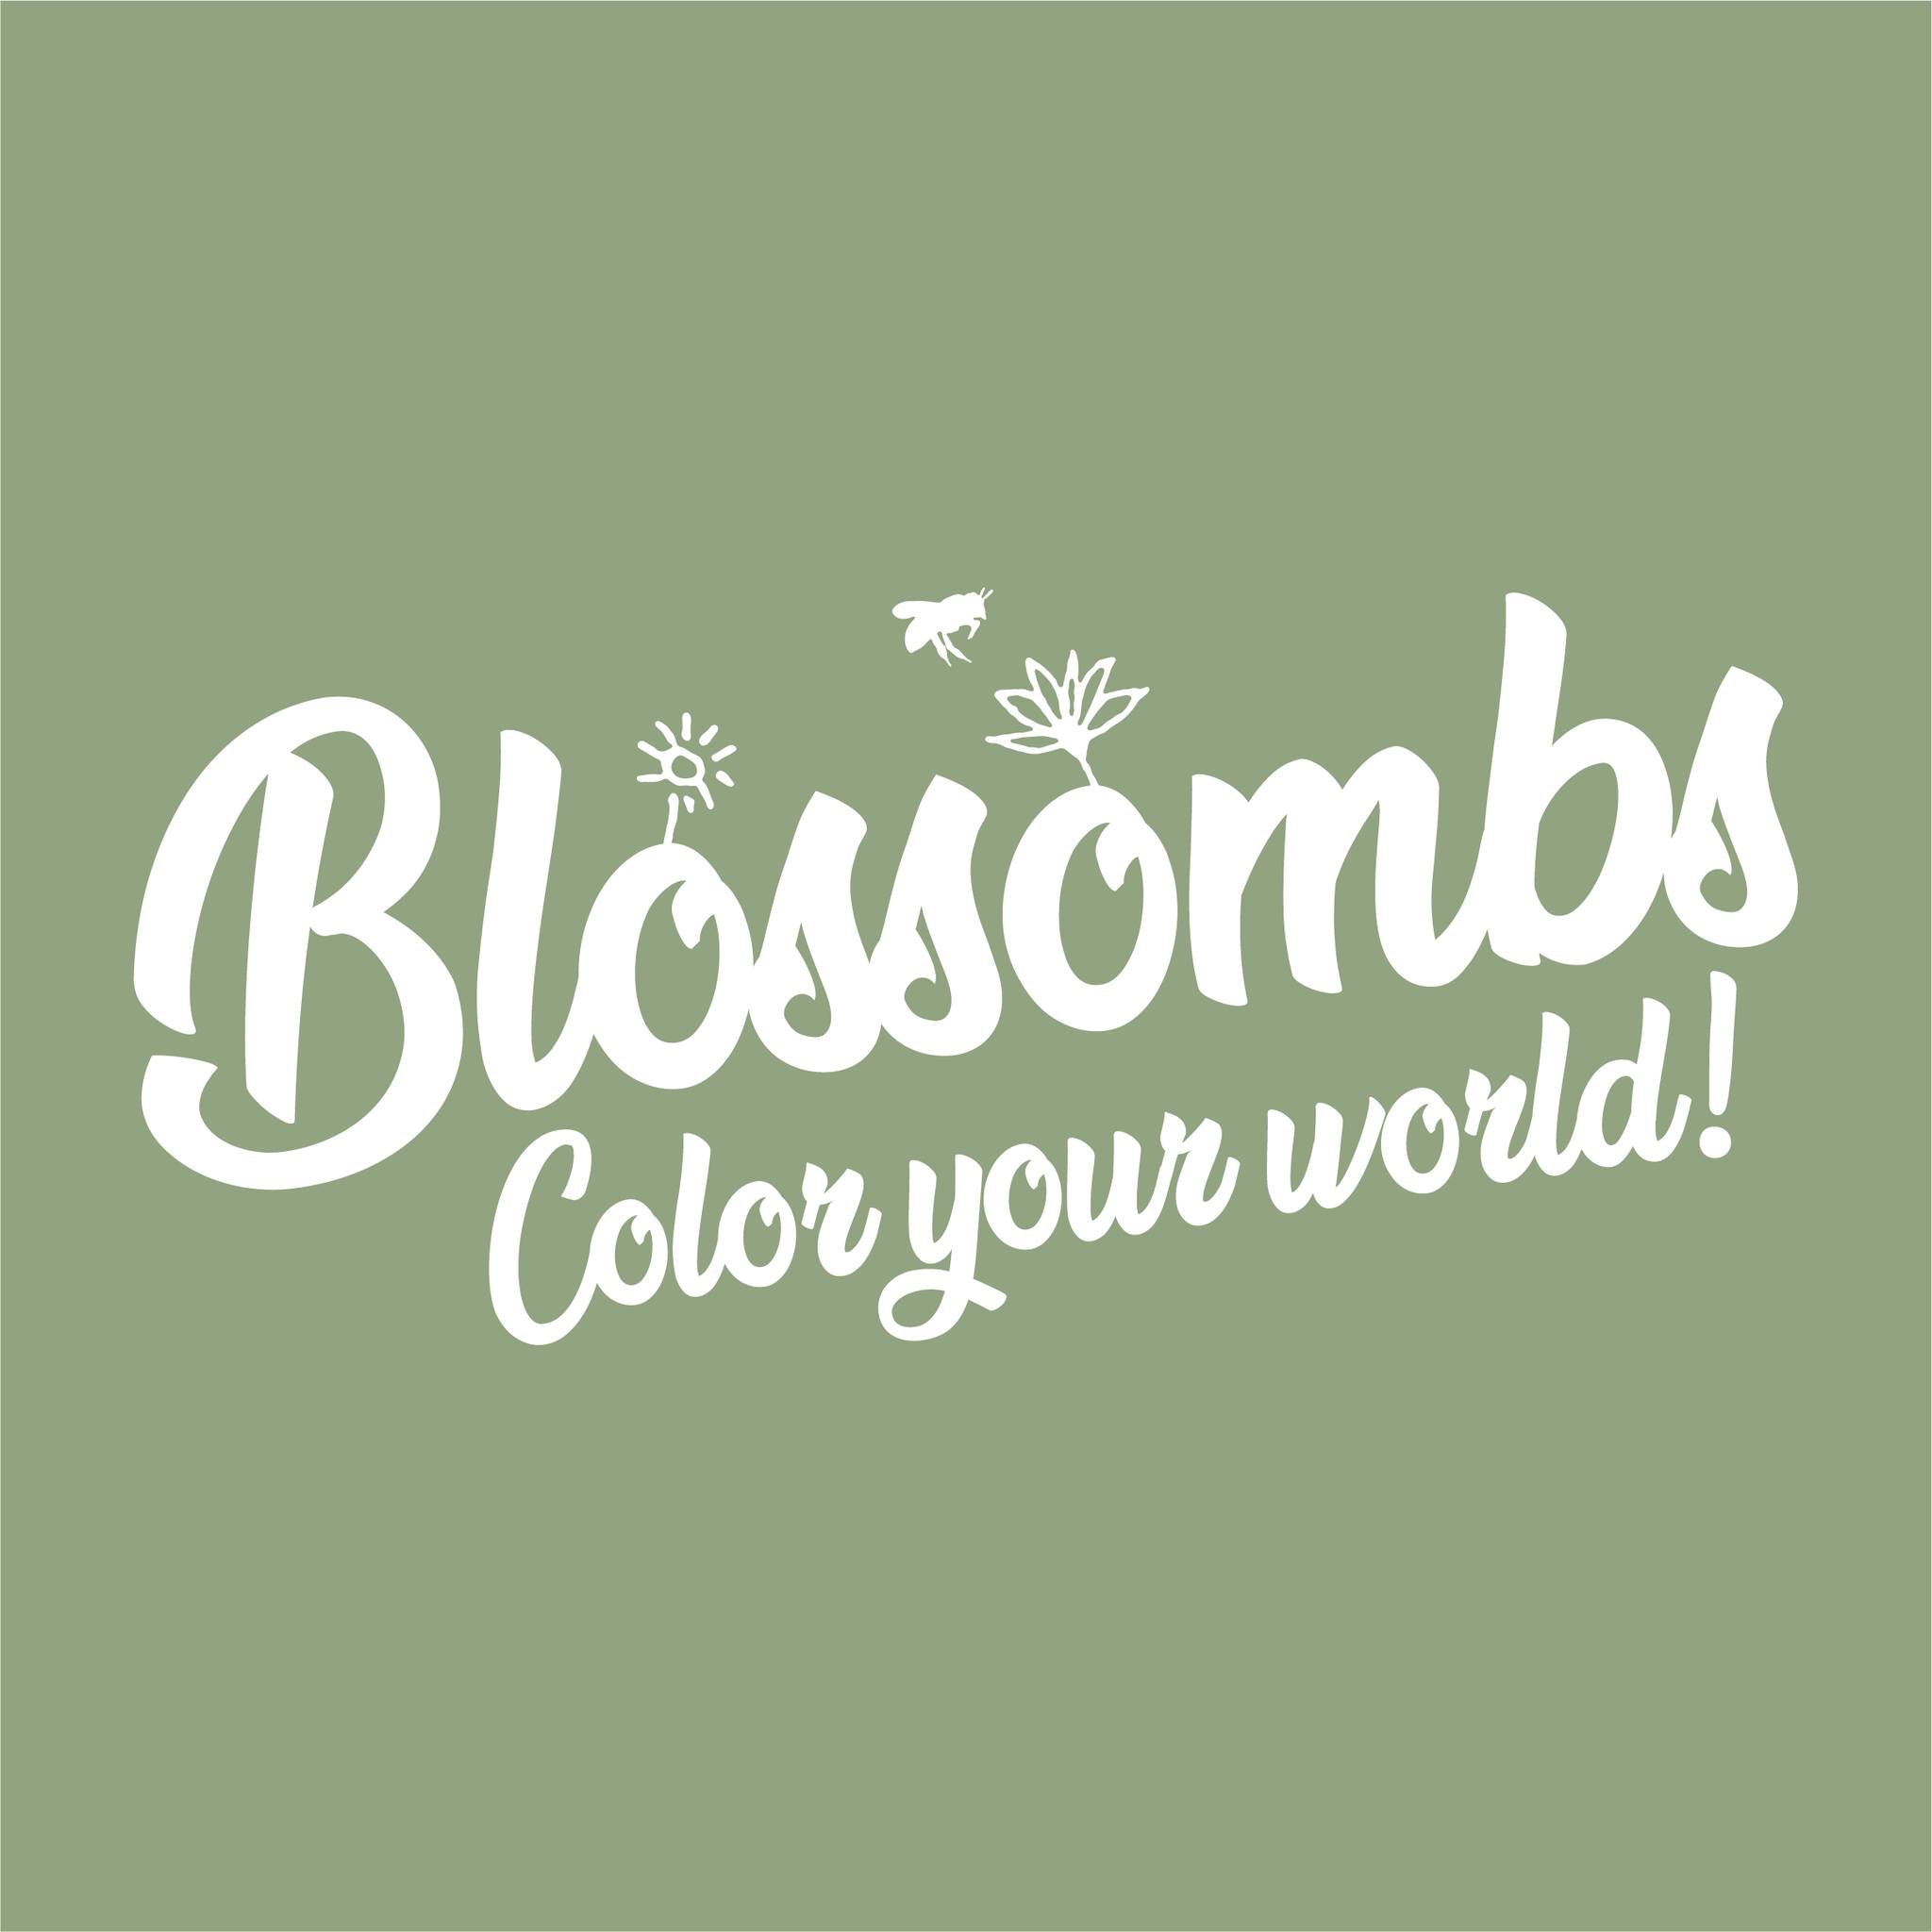 Zaadbommetjes Giftbox Medium “voor de liefste mama” - Blossombs